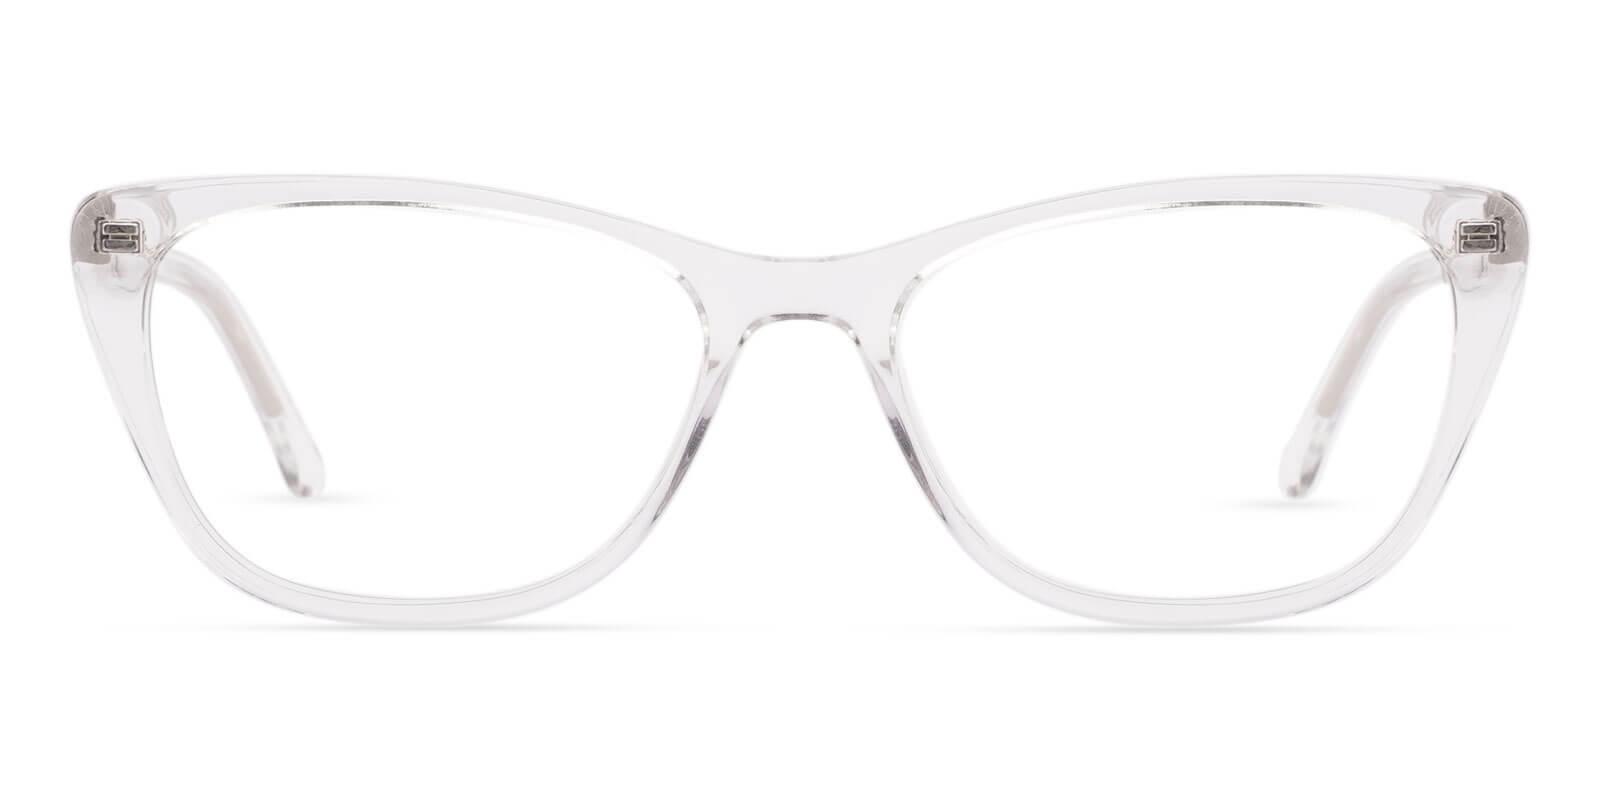 Yuke Translucent Acetate Eyeglasses , SpringHinges , UniversalBridgeFit Frames from ABBE Glasses